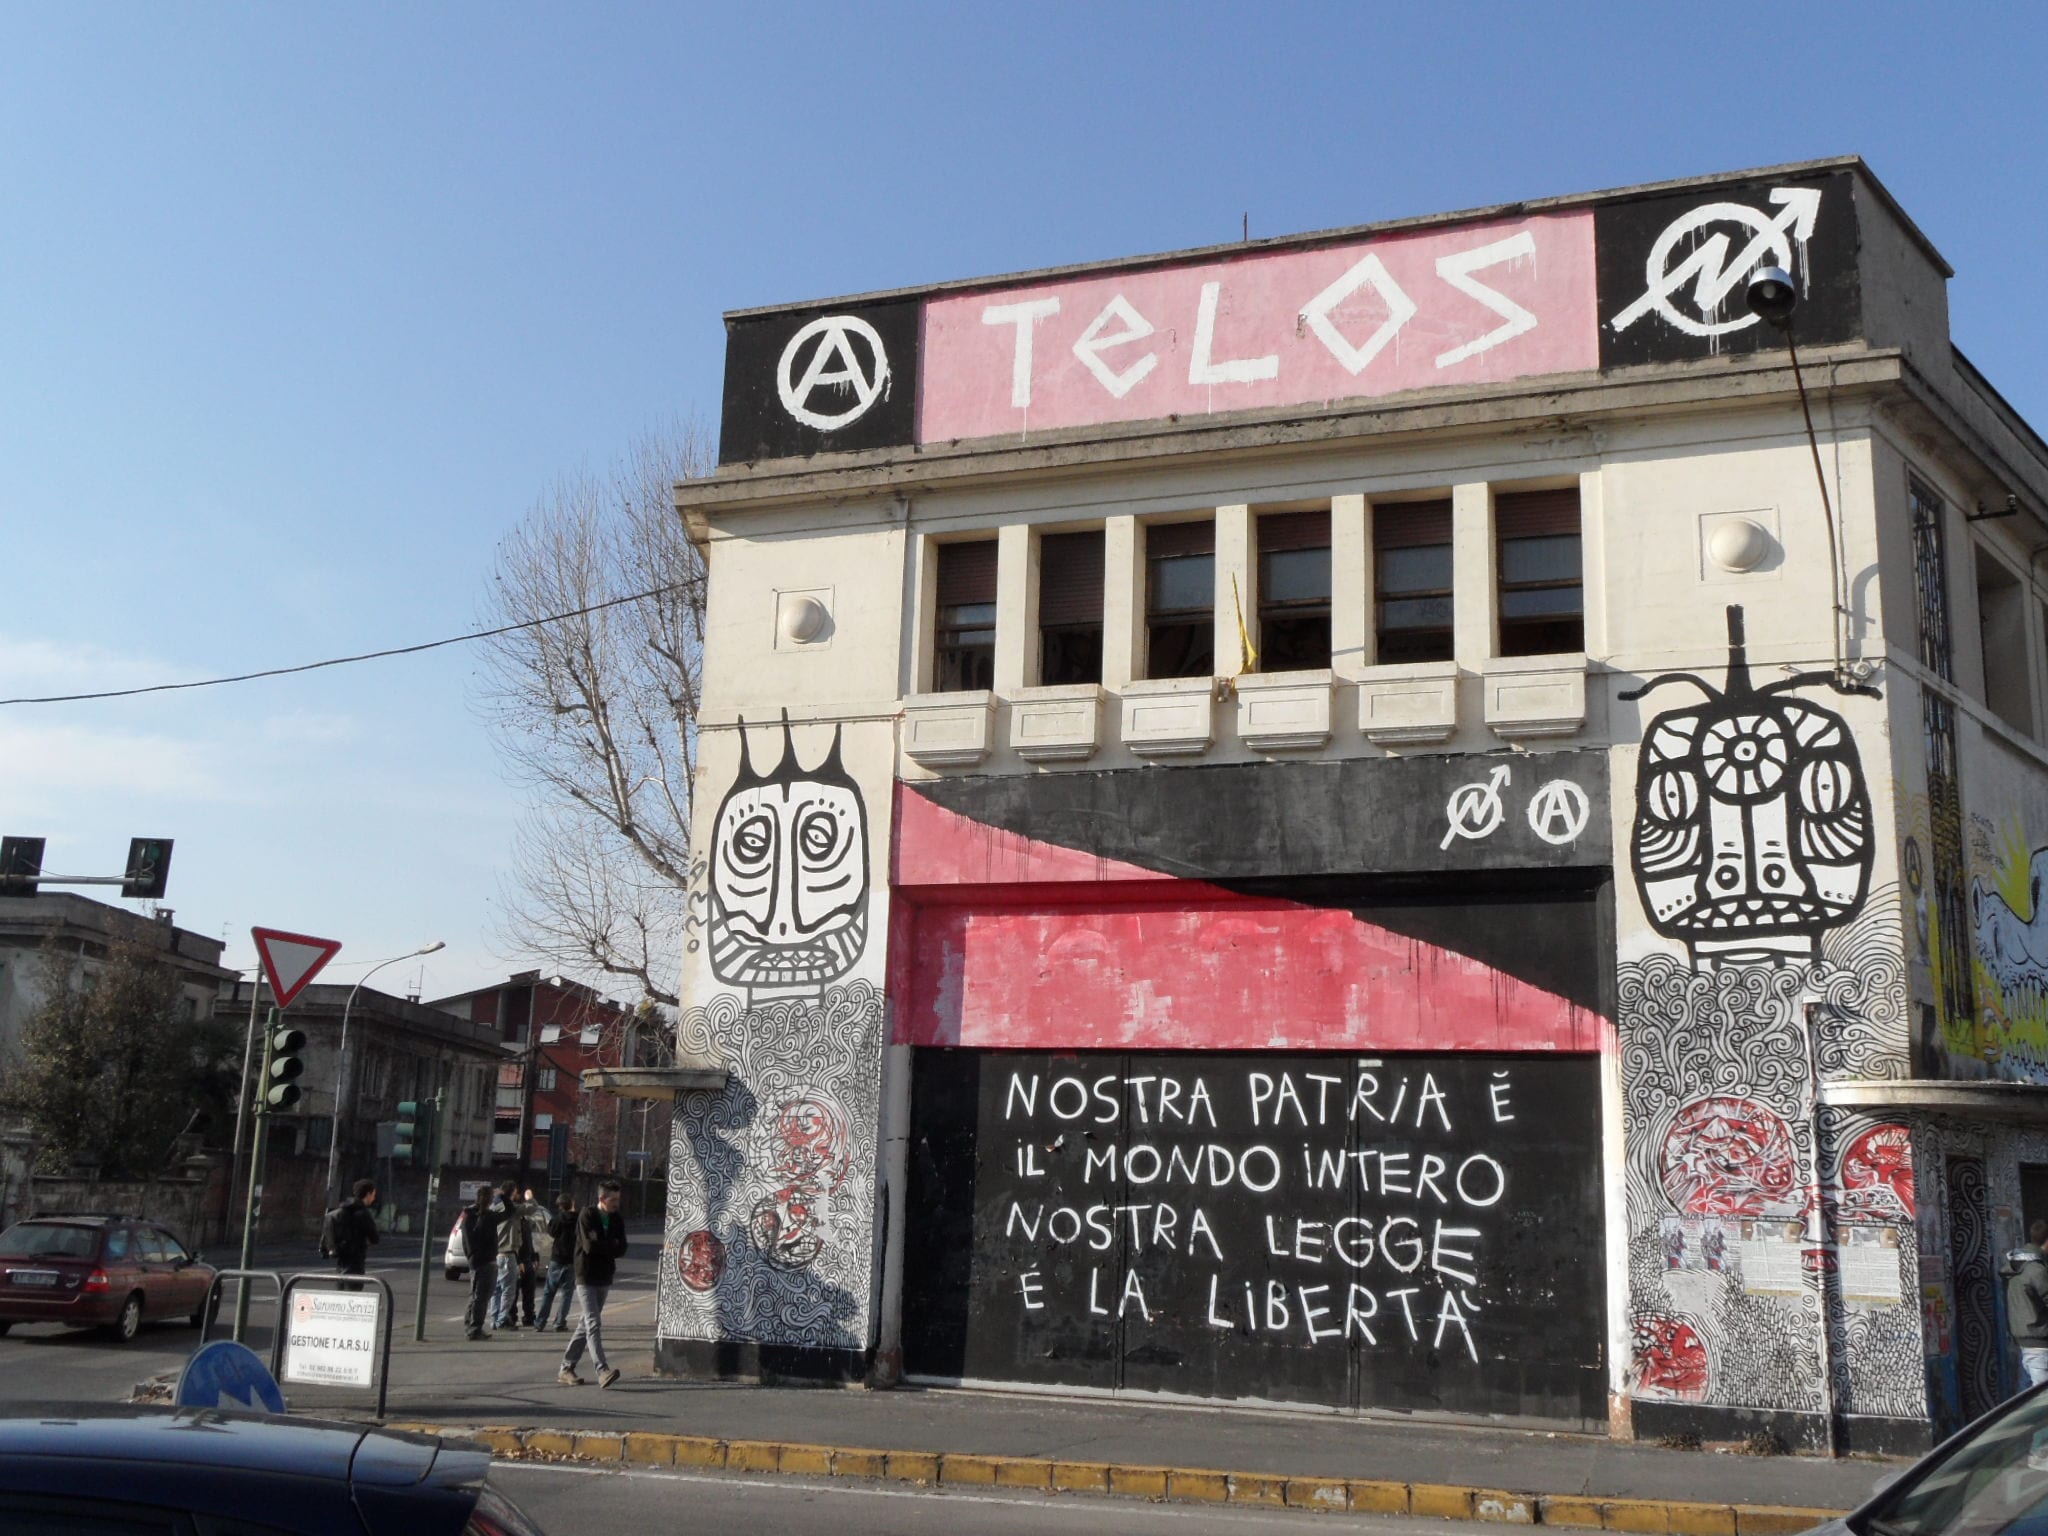 Oggi il Telos cambia volto: via i vecchi graffiti, ne arrivano di nuovi